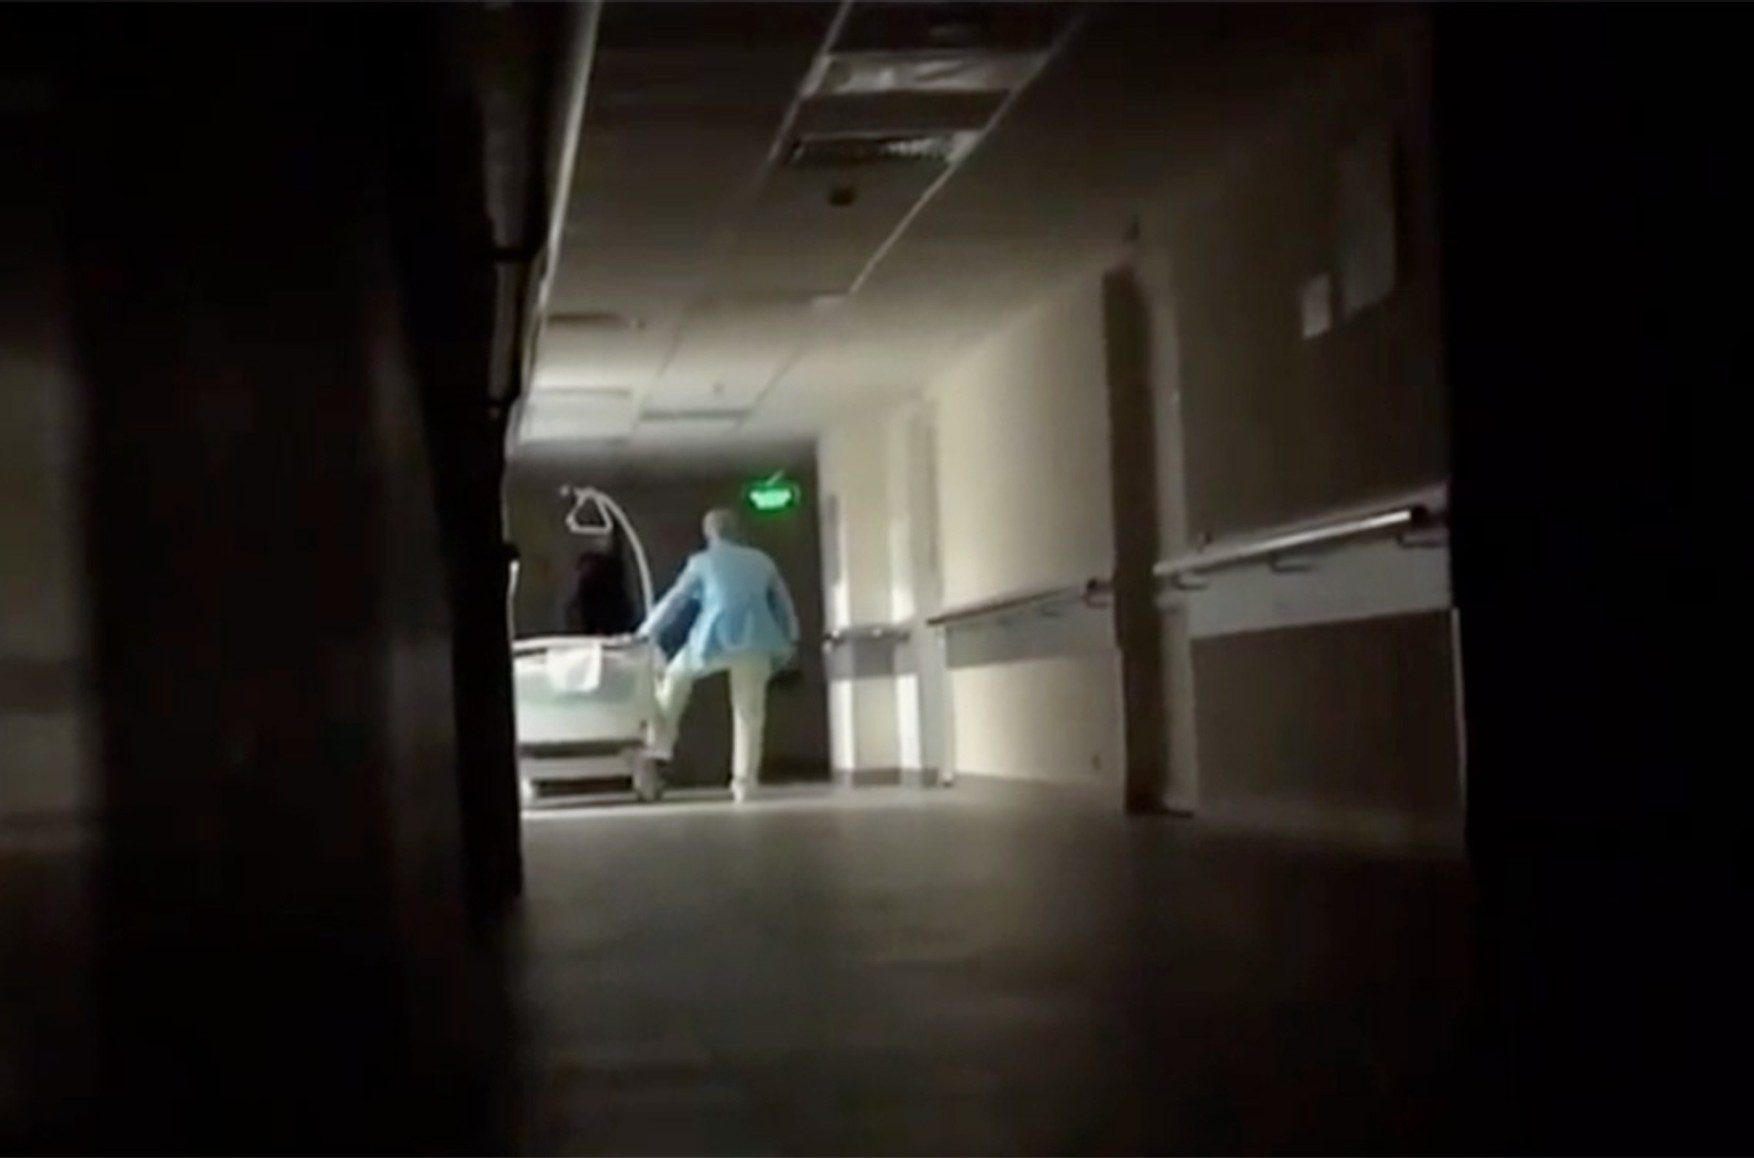 Головлікаря московської лікарні звільнили після відео зі знущаннями медсестер над літньою пацієнткою